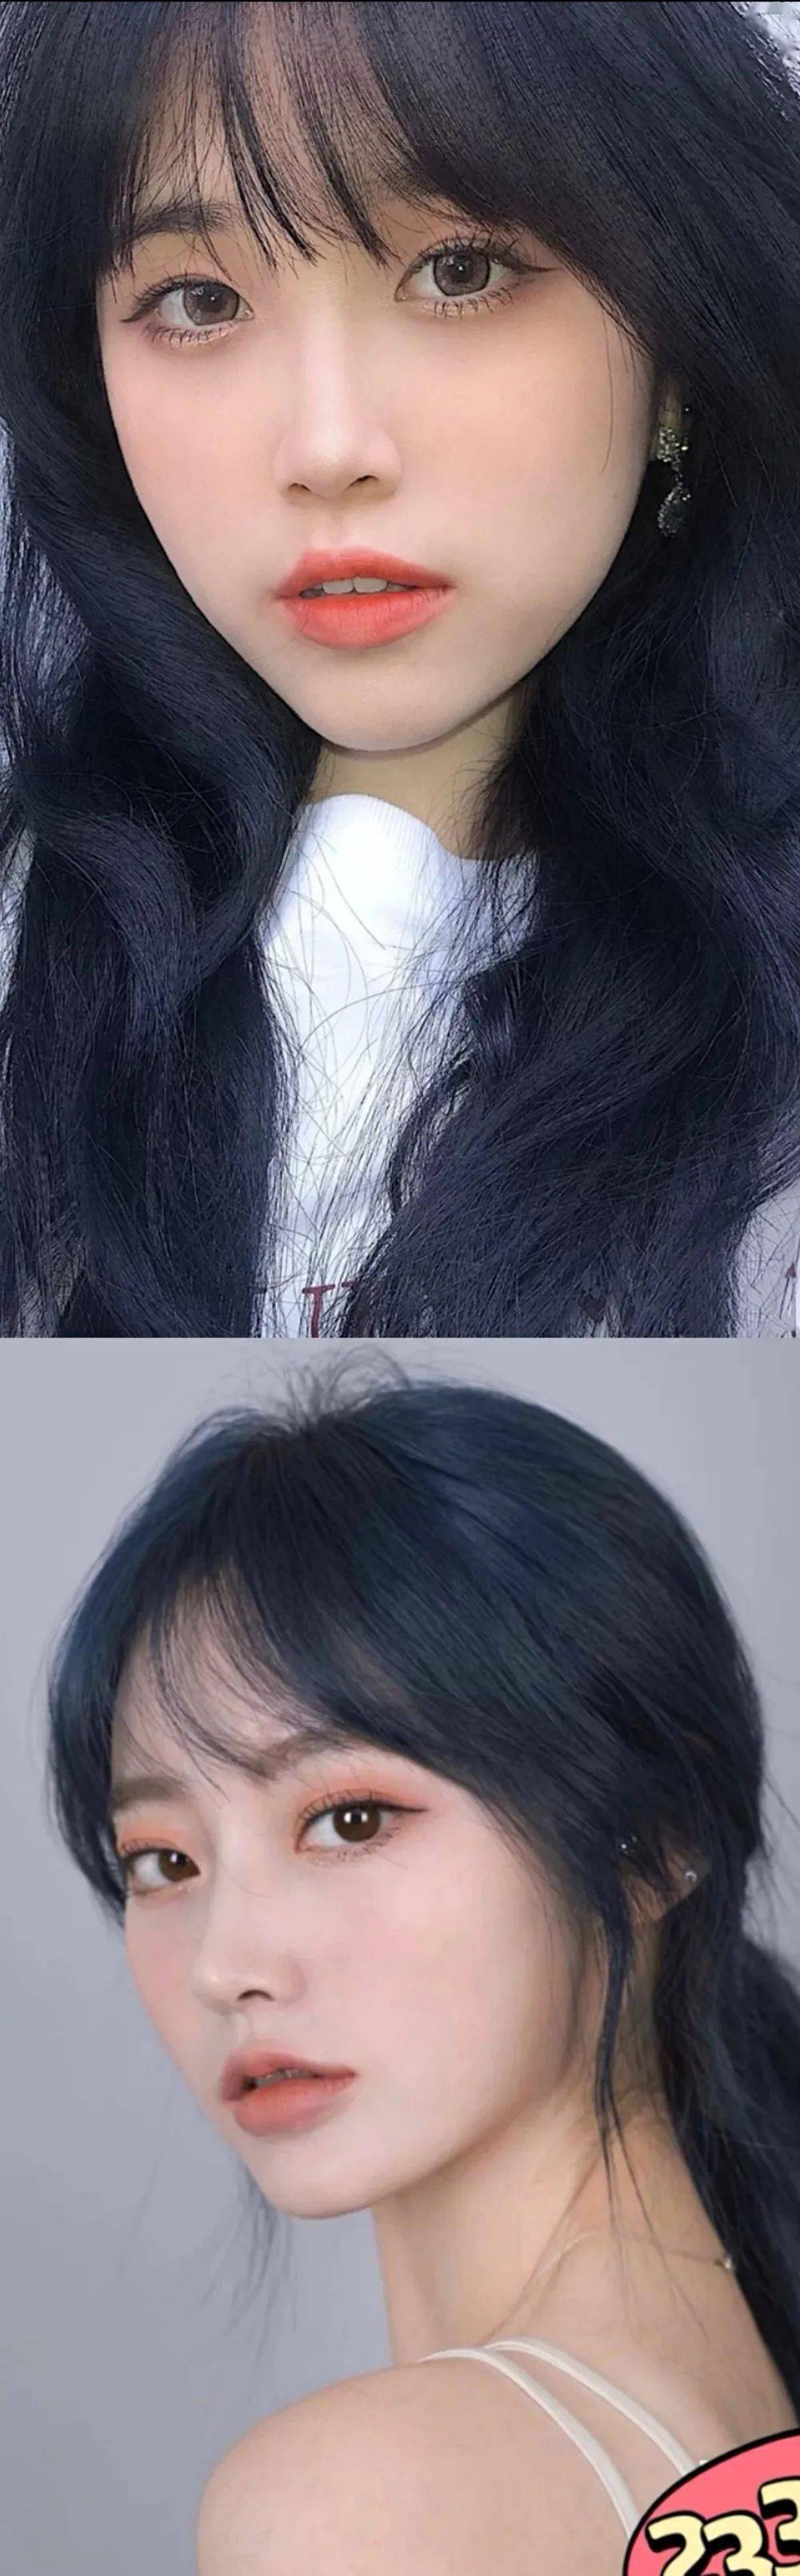 黑蓝色头发看着可能就像黑色,但是比自然的黑色颜色要深一点,也有光泽